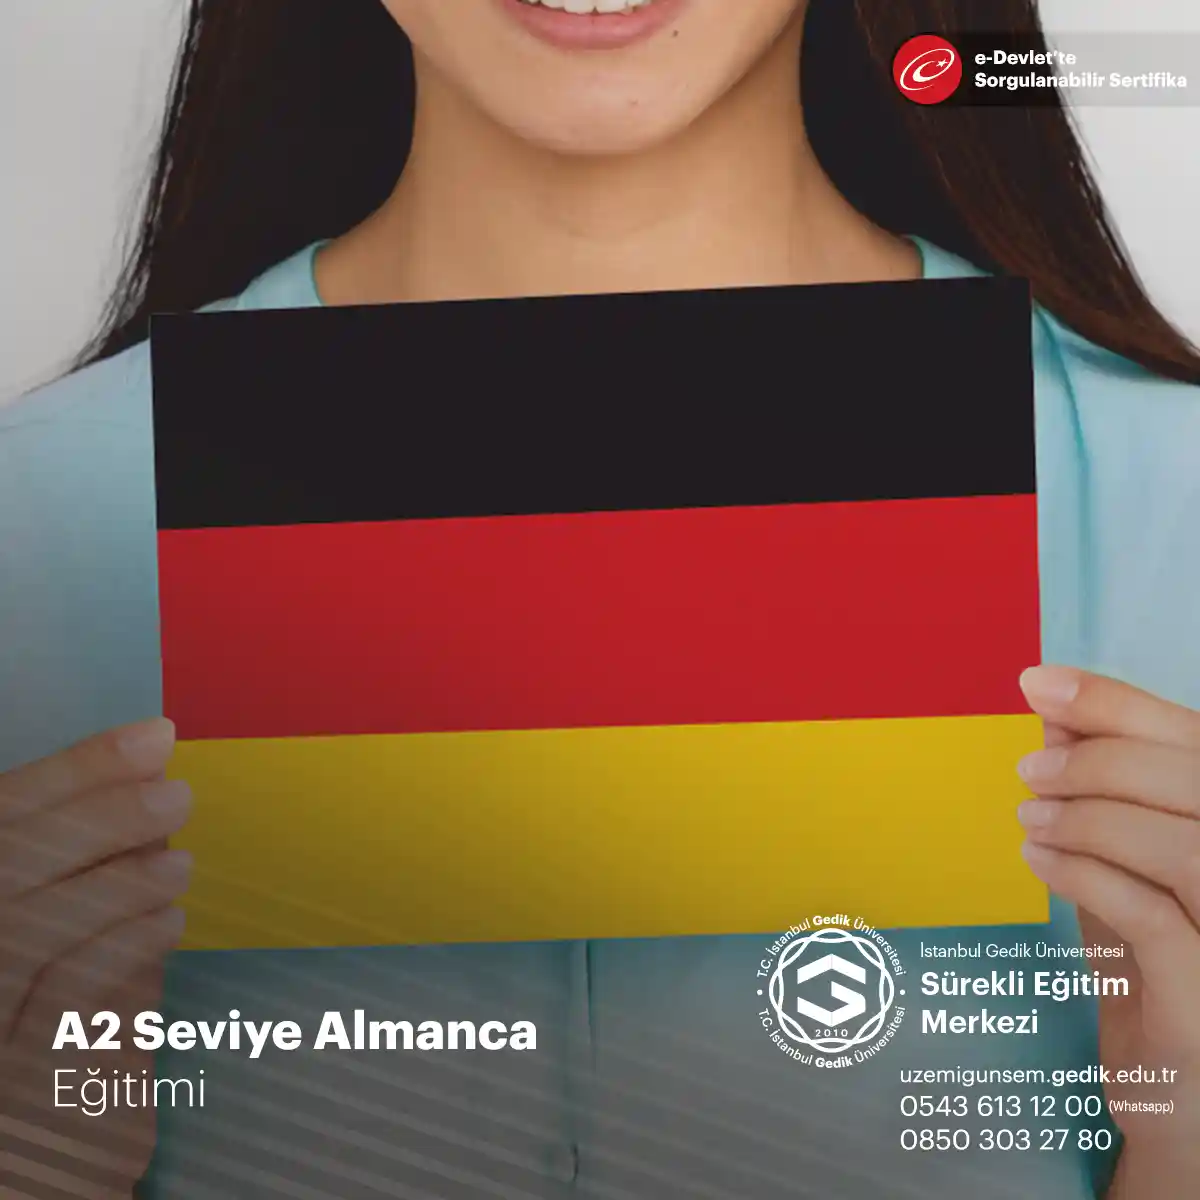 A2 Seviye Almanca Eğitimi